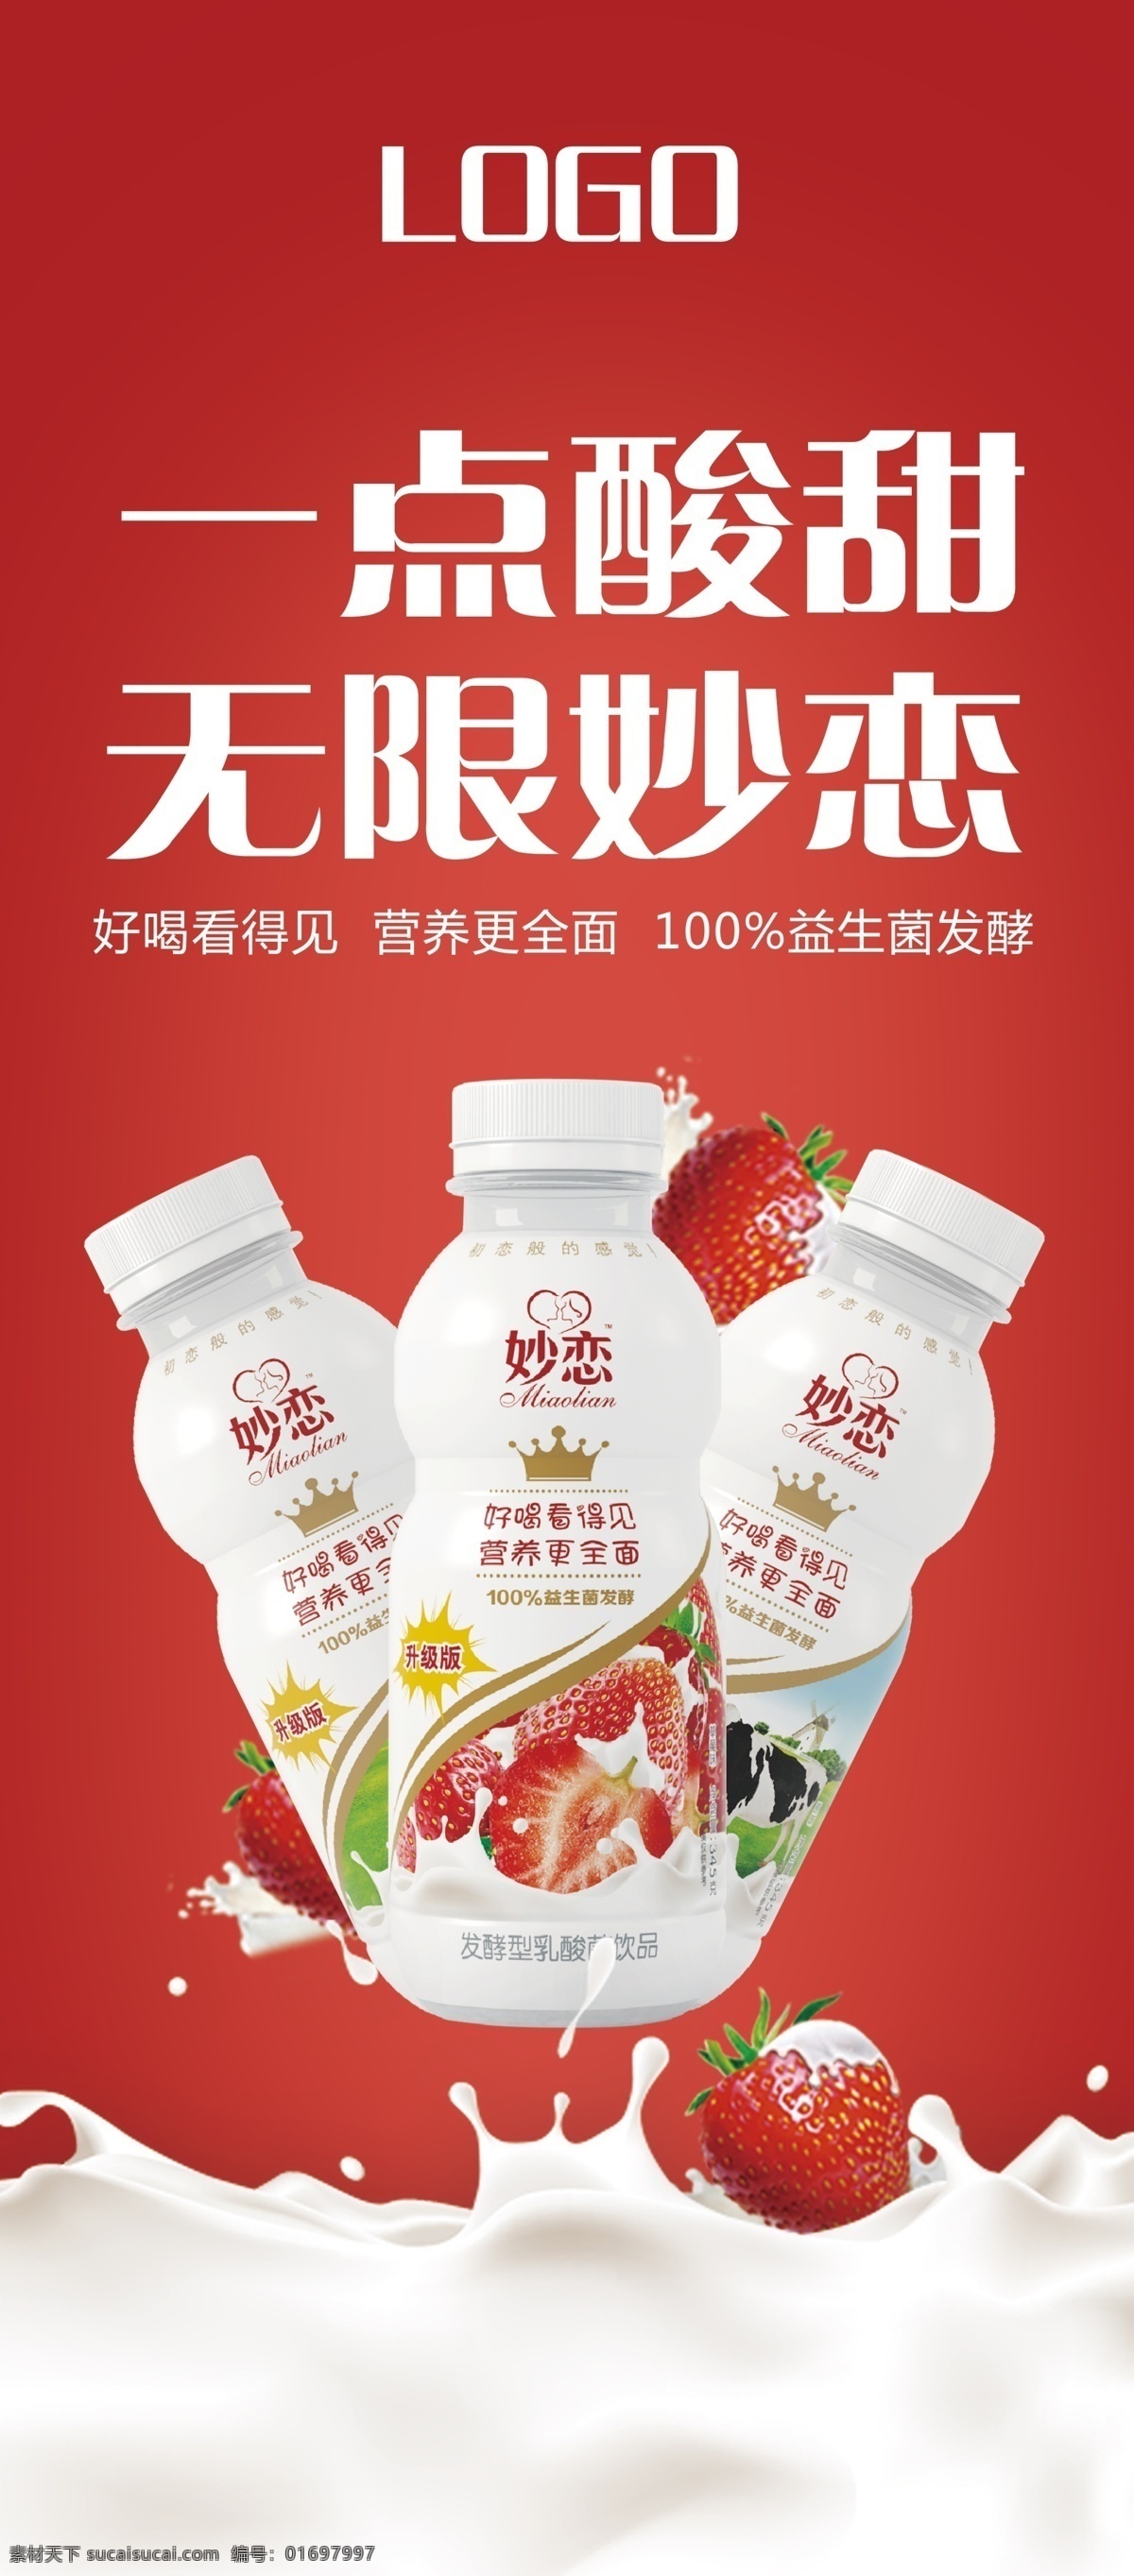 饮料 牛奶广告 展架 草莓 红色 banner 妙恋 一点酸甜 无限妙恋 简约广告 海报